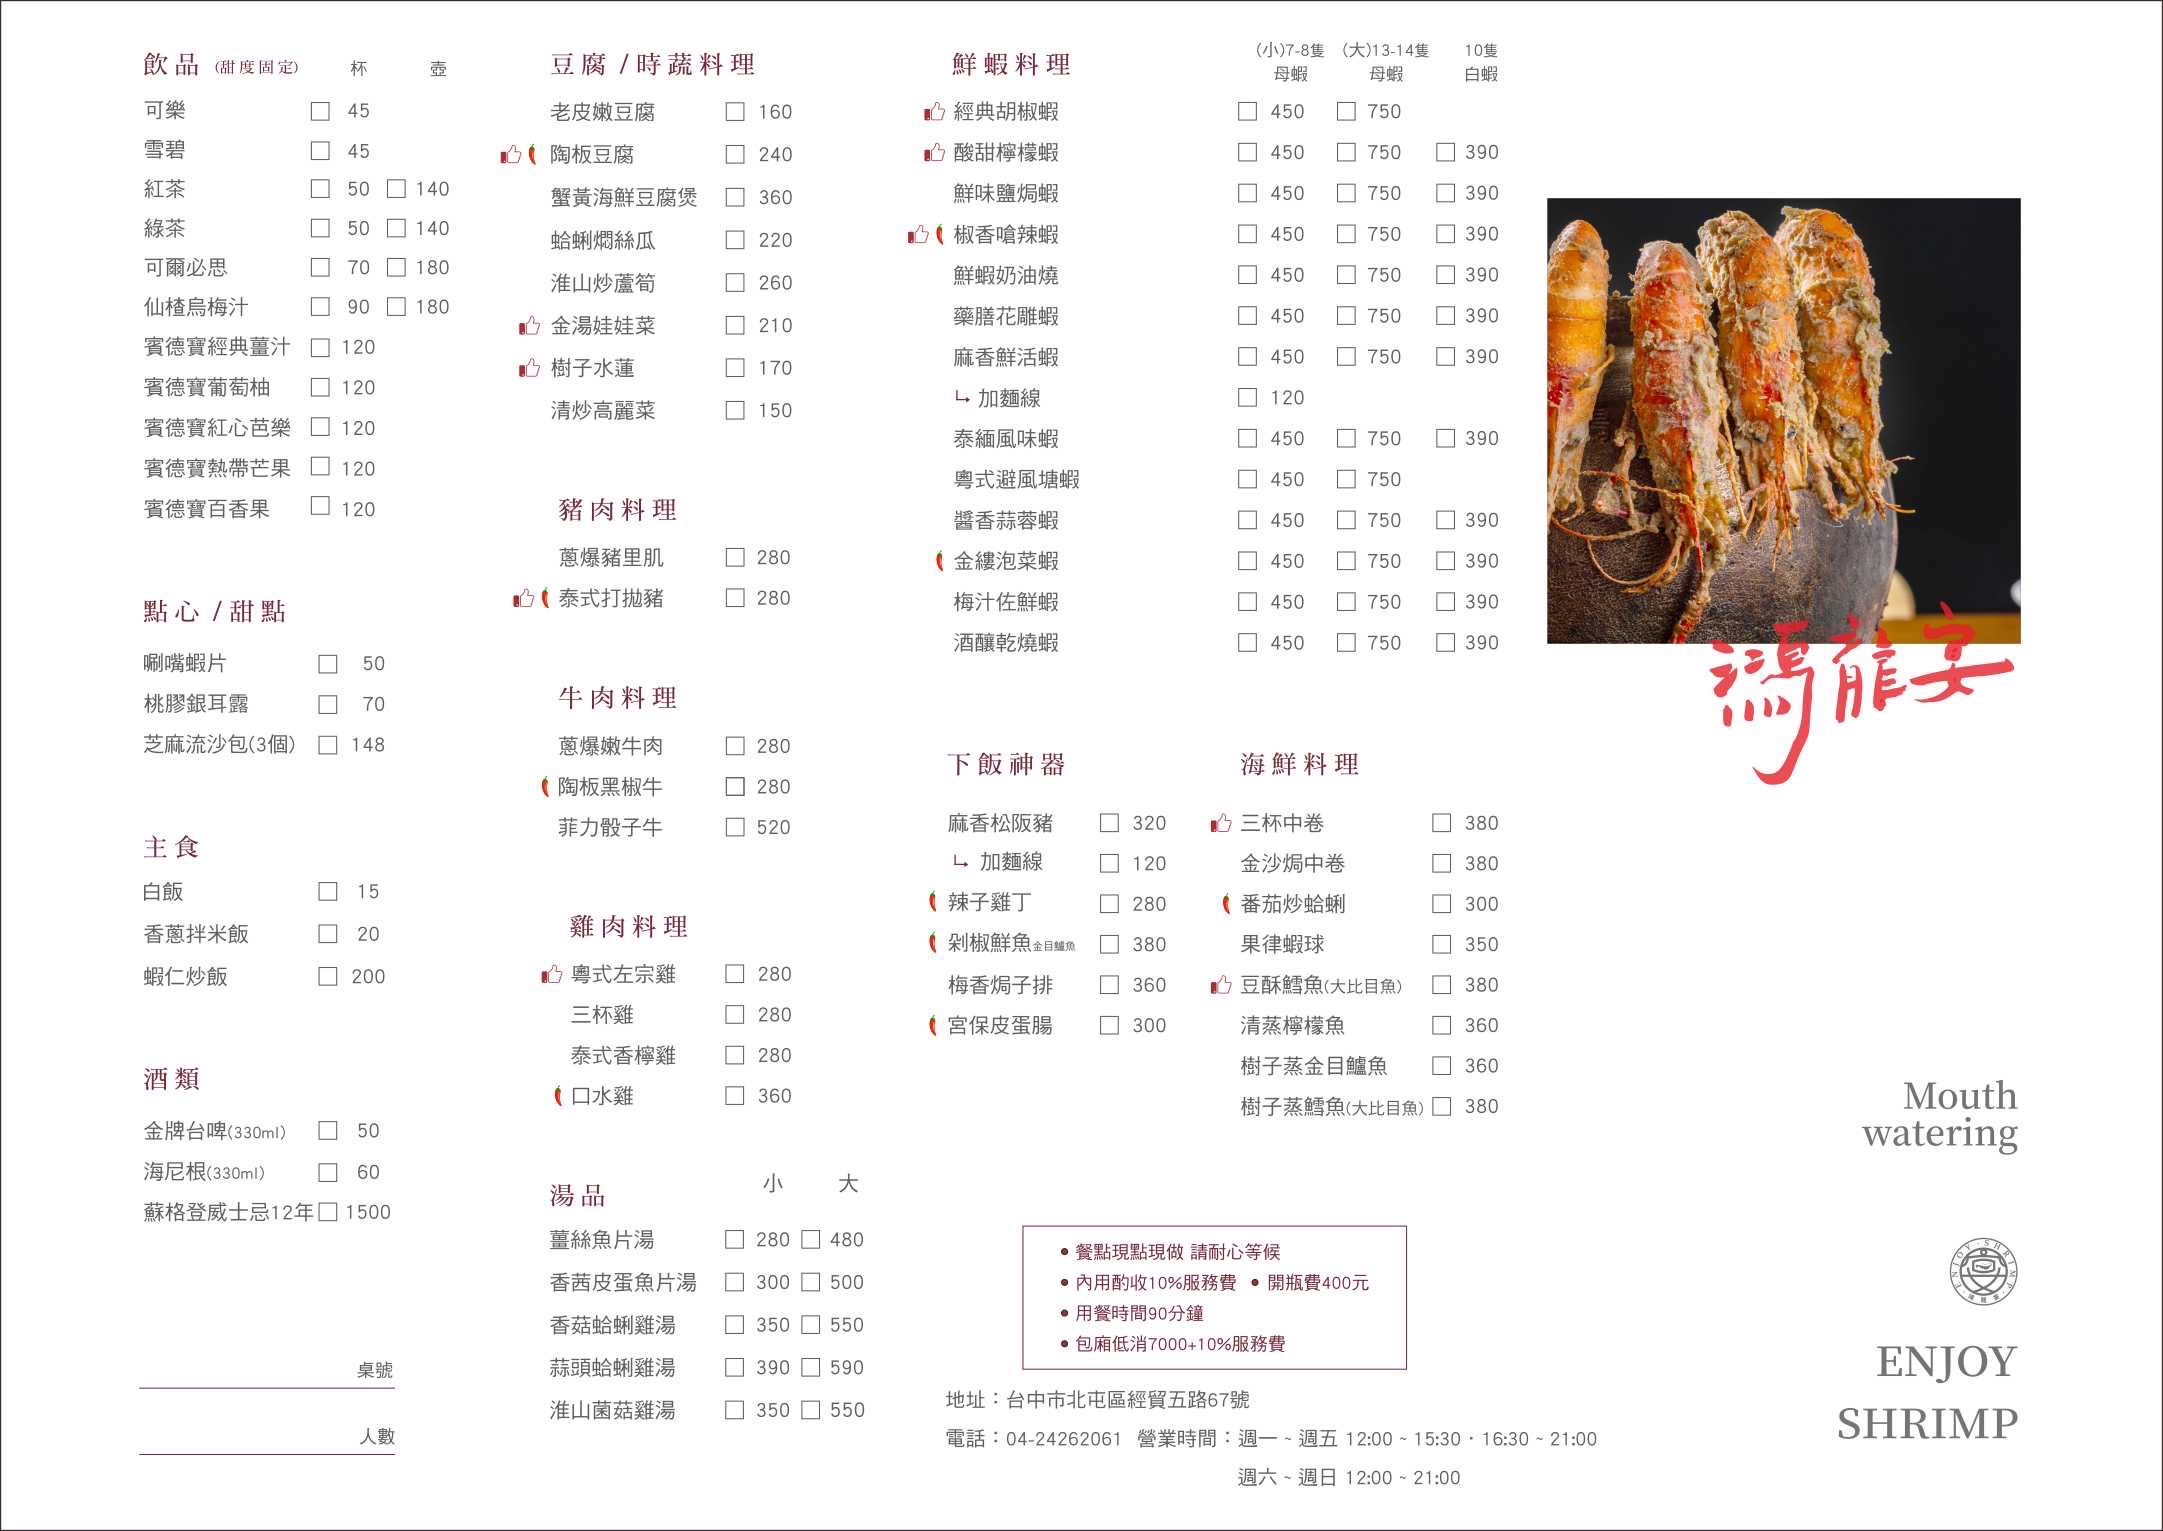 Chinese Cuisine,台中美食,台中聚餐,台中蝦料理,台中餐廳,泰國蝦,活蝦餐廳,胡椒蝦,蝦料理,鴻龍宴,鴻龍宴菜單